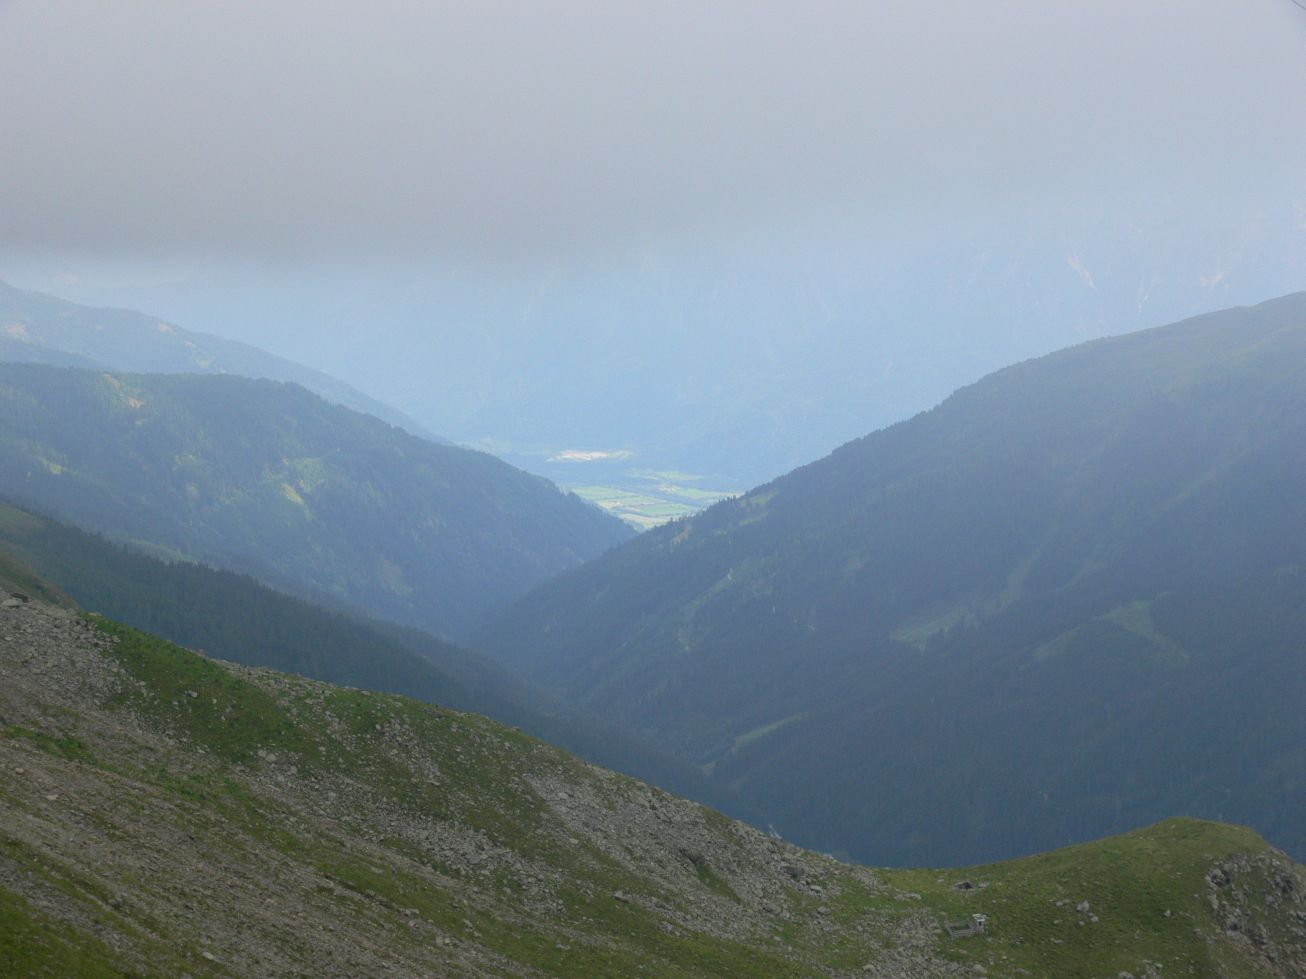 300. Výhled z cesty Lienzer Hütte - Wangenitzsee Hütte směrem k údolí u Lienz
